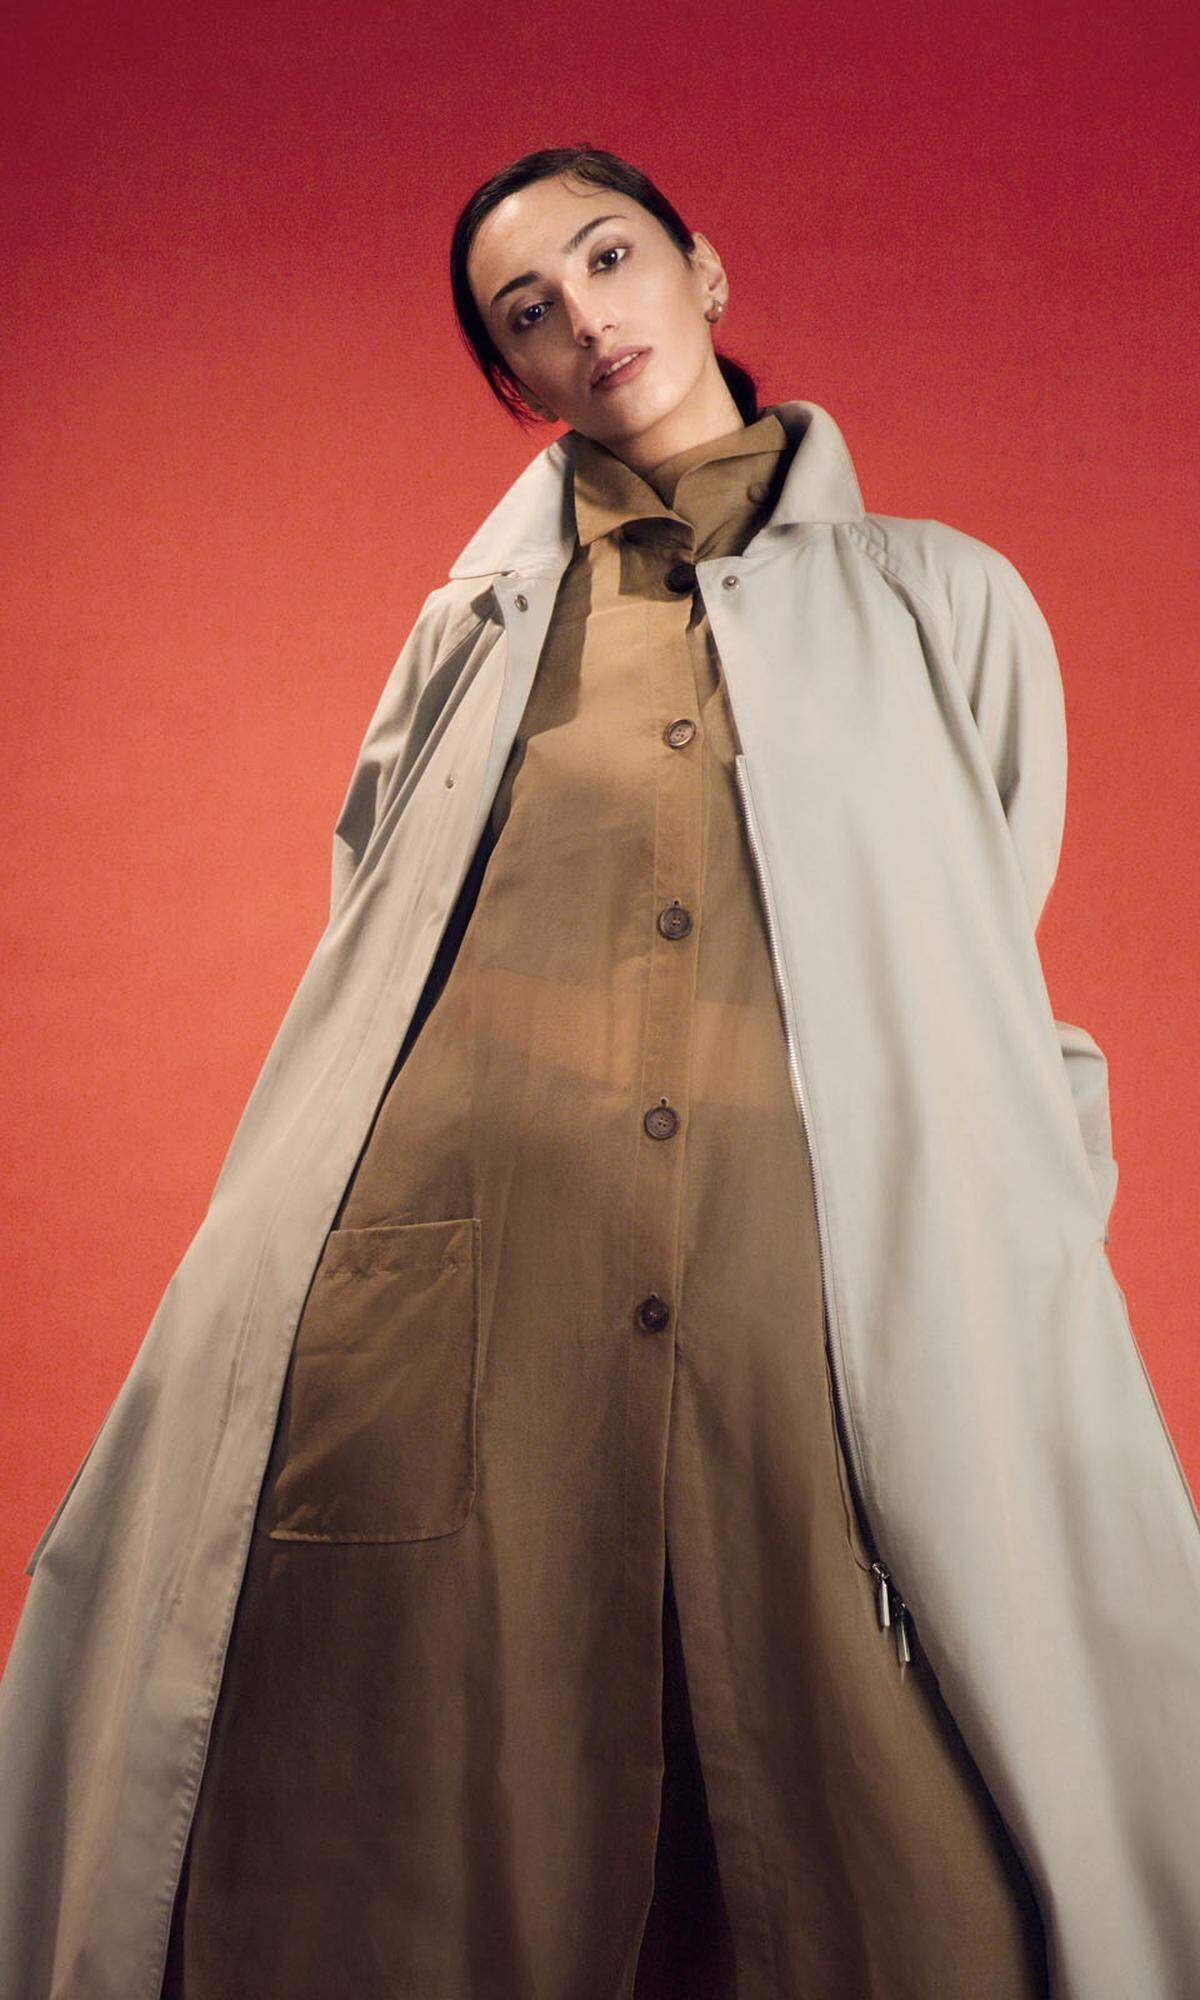 Salvatore Ferragamo. Mihriban trägt eine Bluse aus Seidenorganza, ein Top aus Seidenstretch und einen Oversizemantel aus Baumwollgarbadine.